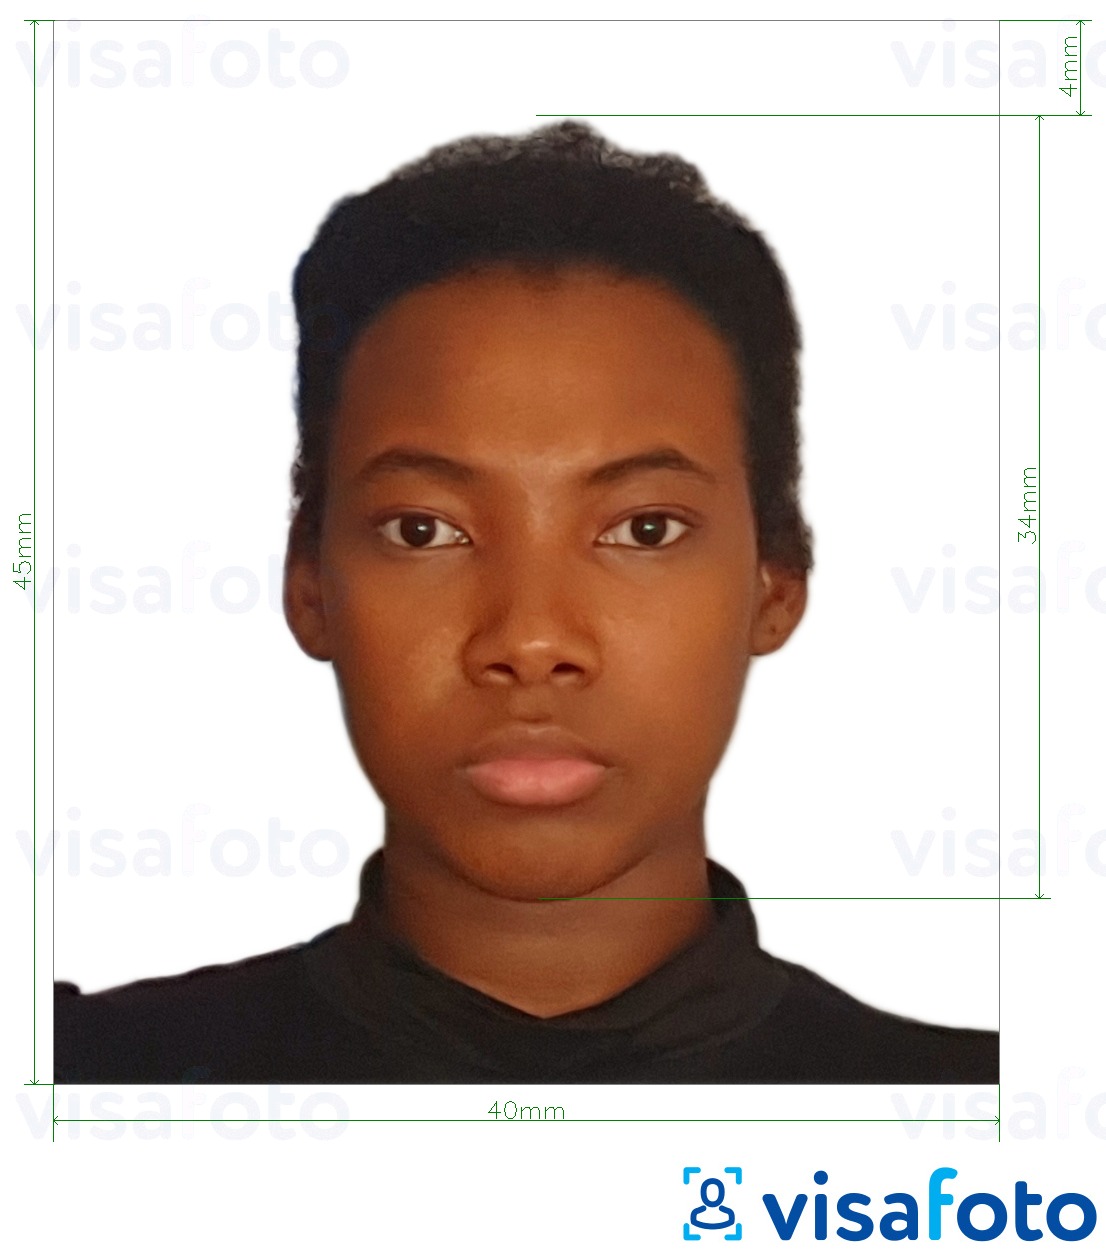 نمونه ی یک عکس برای گذرنامه تانزانیا 40x45 میلی متر (4x4.5 سانتی متر) با مشخصات دقیق